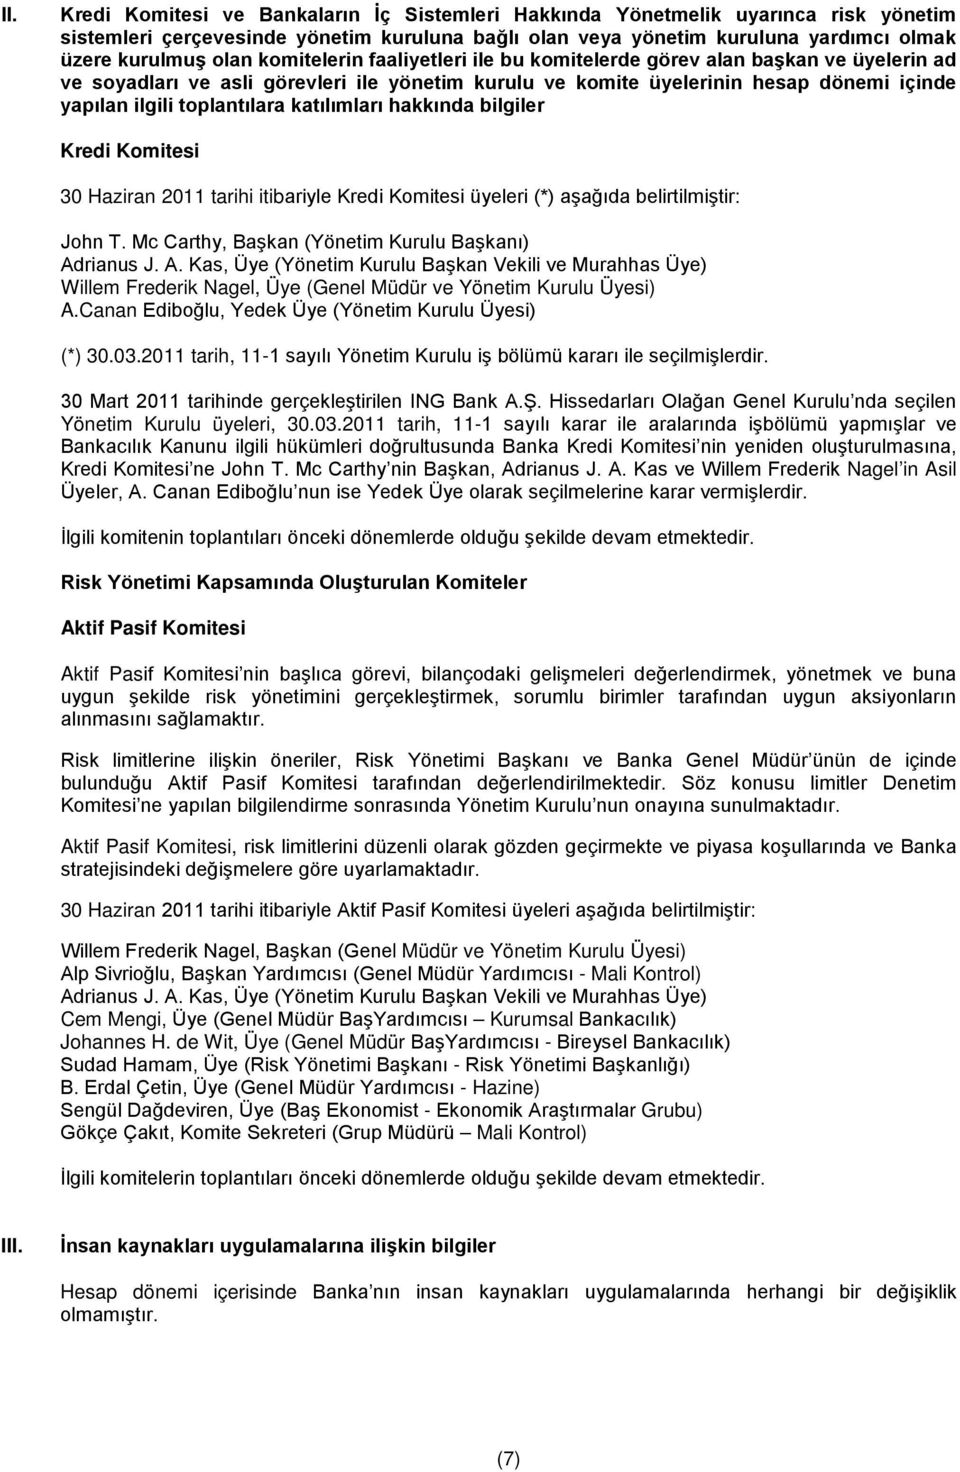 katılımları hakkında bilgiler Kredi Komitesi 30 Haziran 2011 tarihi itibariyle Kredi Komitesi üyeleri (*) aşağıda belirtilmiştir: John T. Mc Carthy, Başkan (Yönetim Kurulu Başkanı) Ad